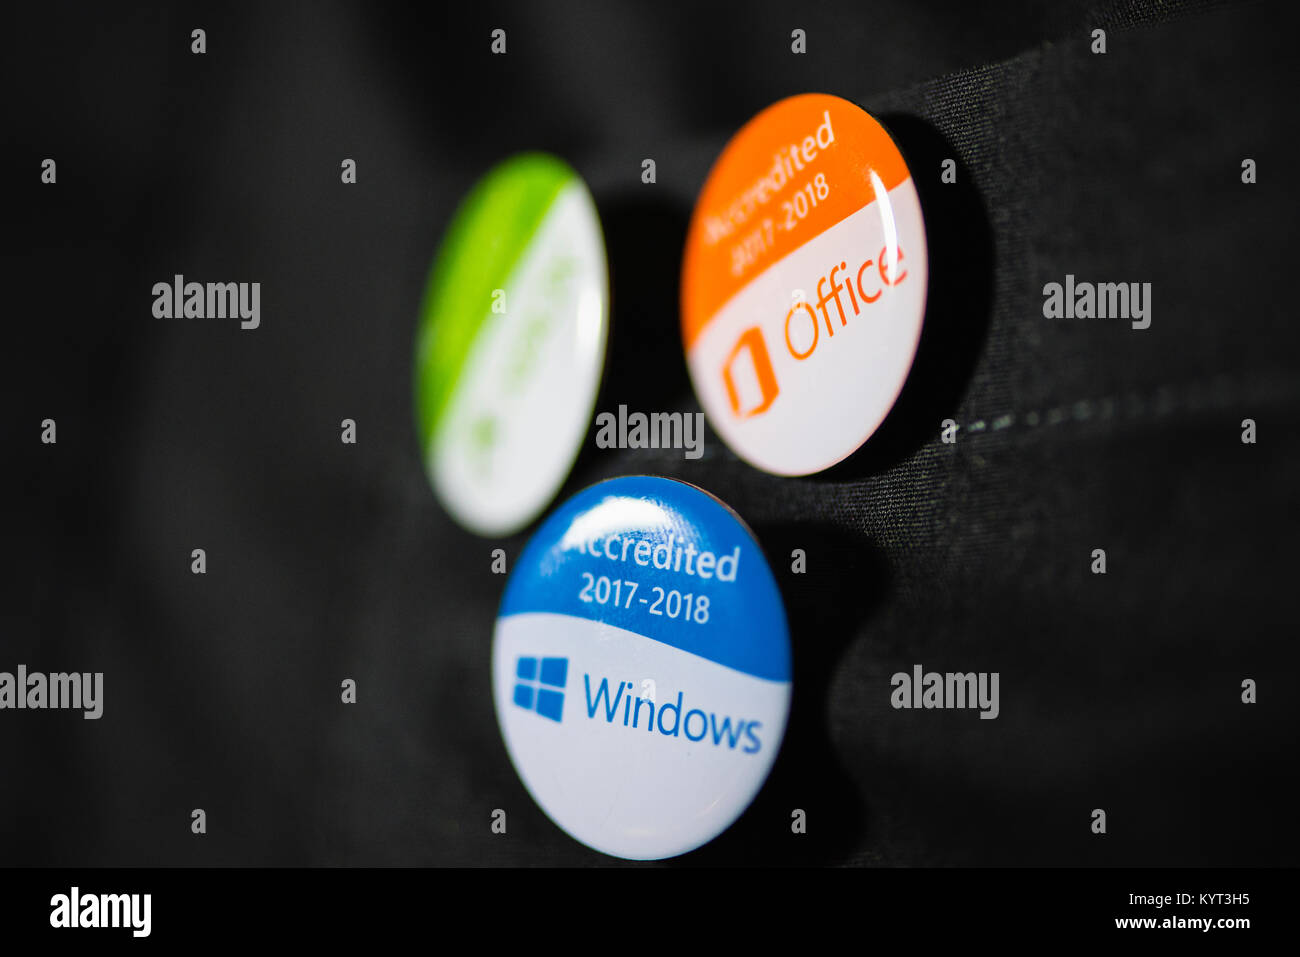 Sales assistant de Currys PC World porte badges montrant qu'ils sont accrédités dans Windows, Office et Xbox. Banque D'Images